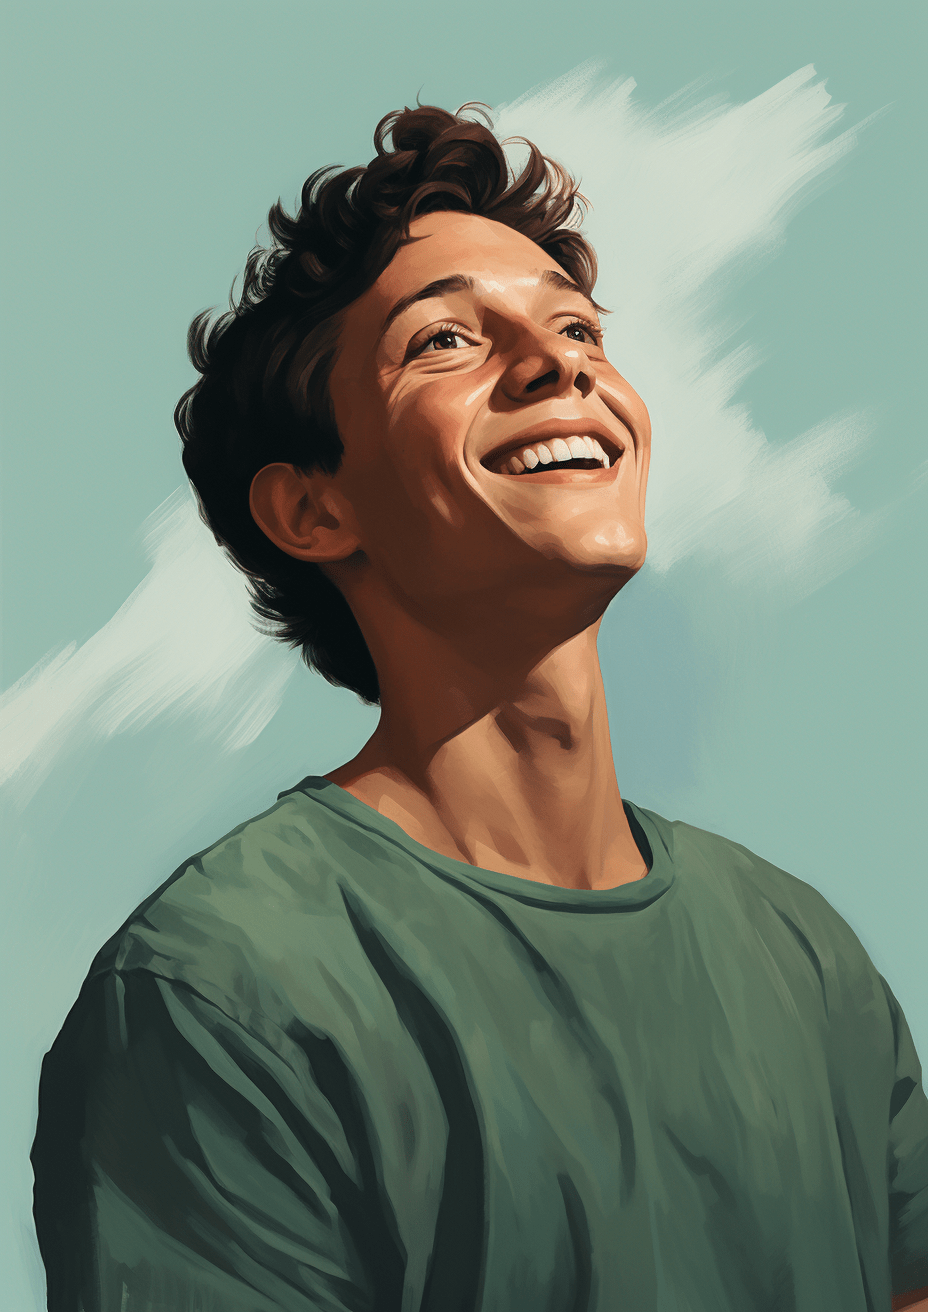 Portret van een lachende jongeman die omhoog kijkt, met een lichtblauwe hemel op de achtergrond